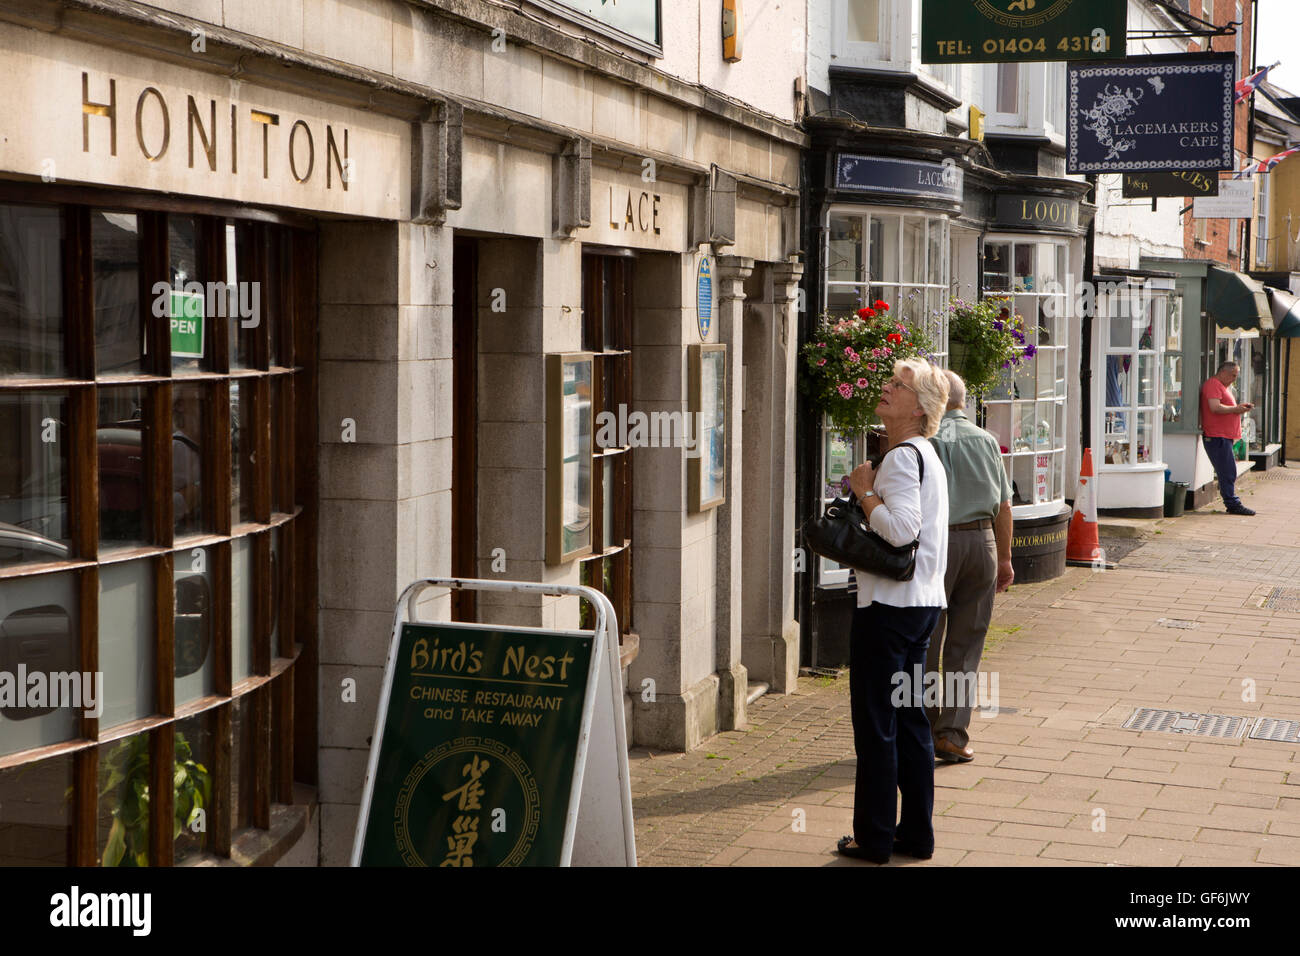 Royaume-uni, Angleterre, Devon, Honiton, High Street, à la femme à l'ancienne boutique dentelle Honiton Banque D'Images